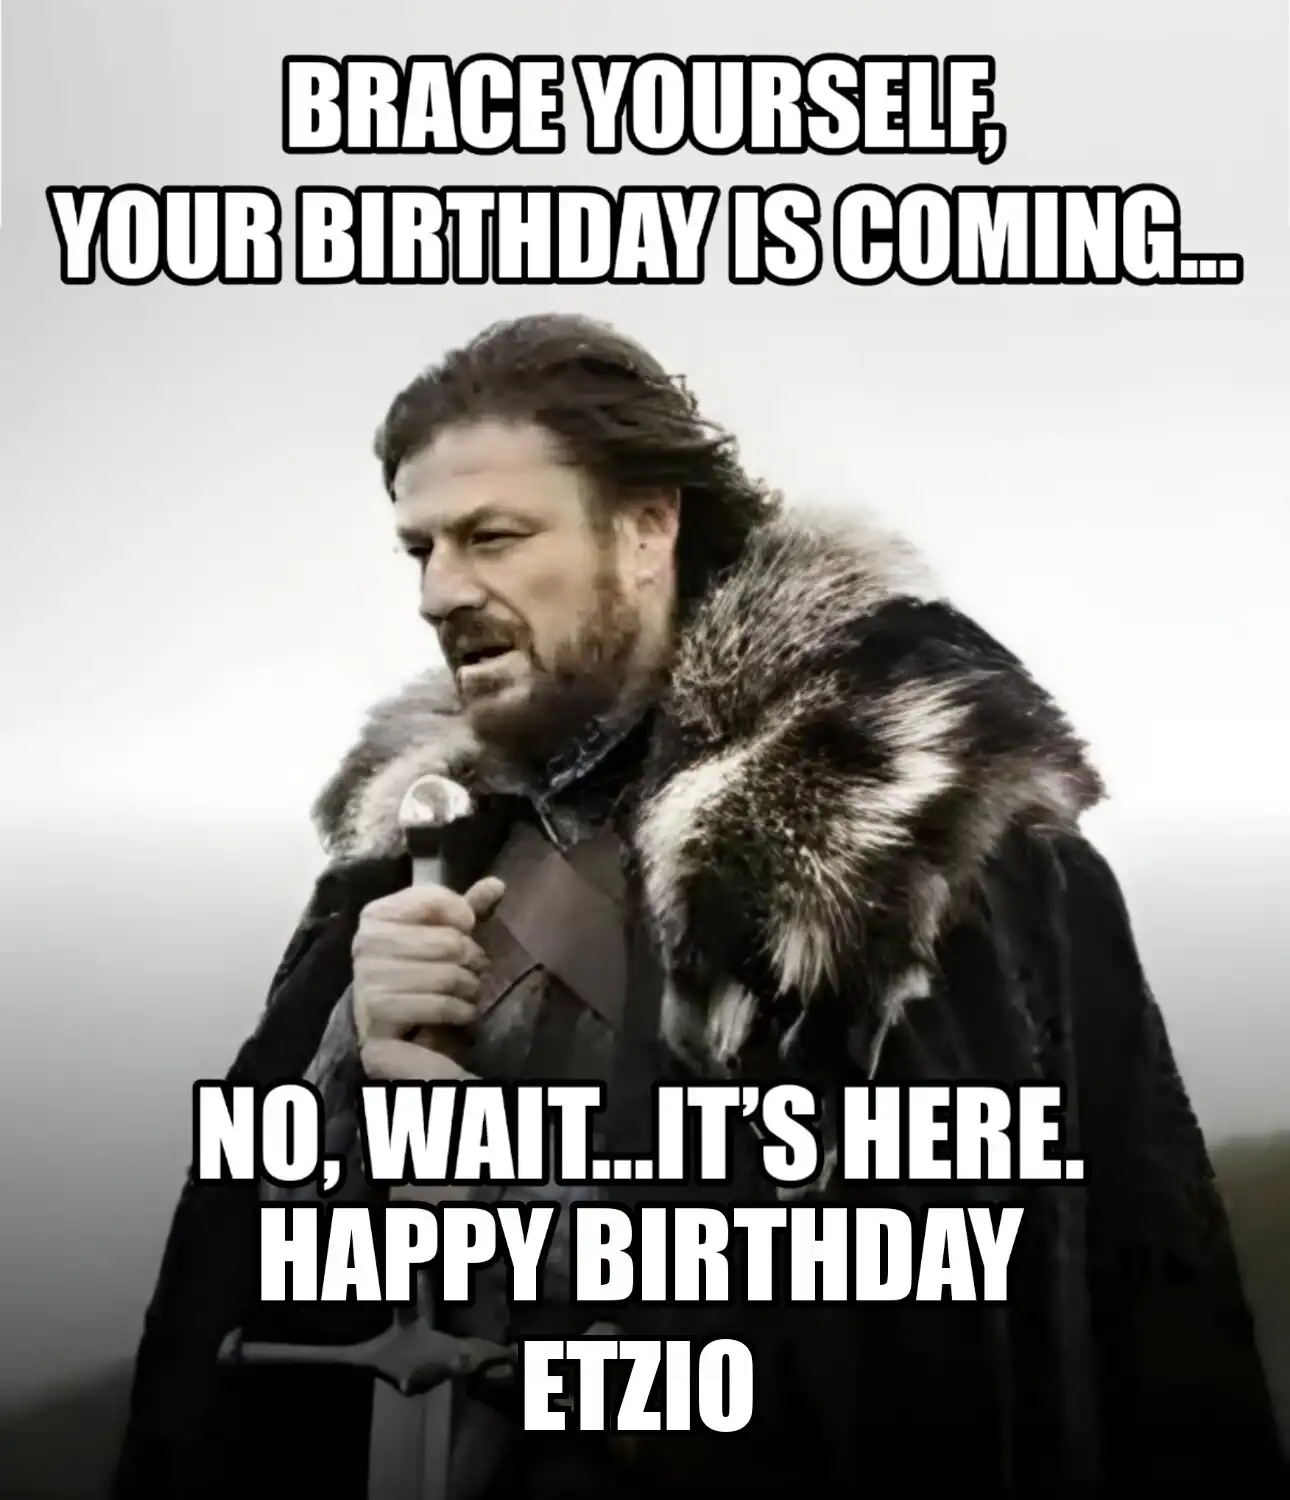 Happy Birthday Etzio Brace Yourself Your Birthday Is Coming Meme